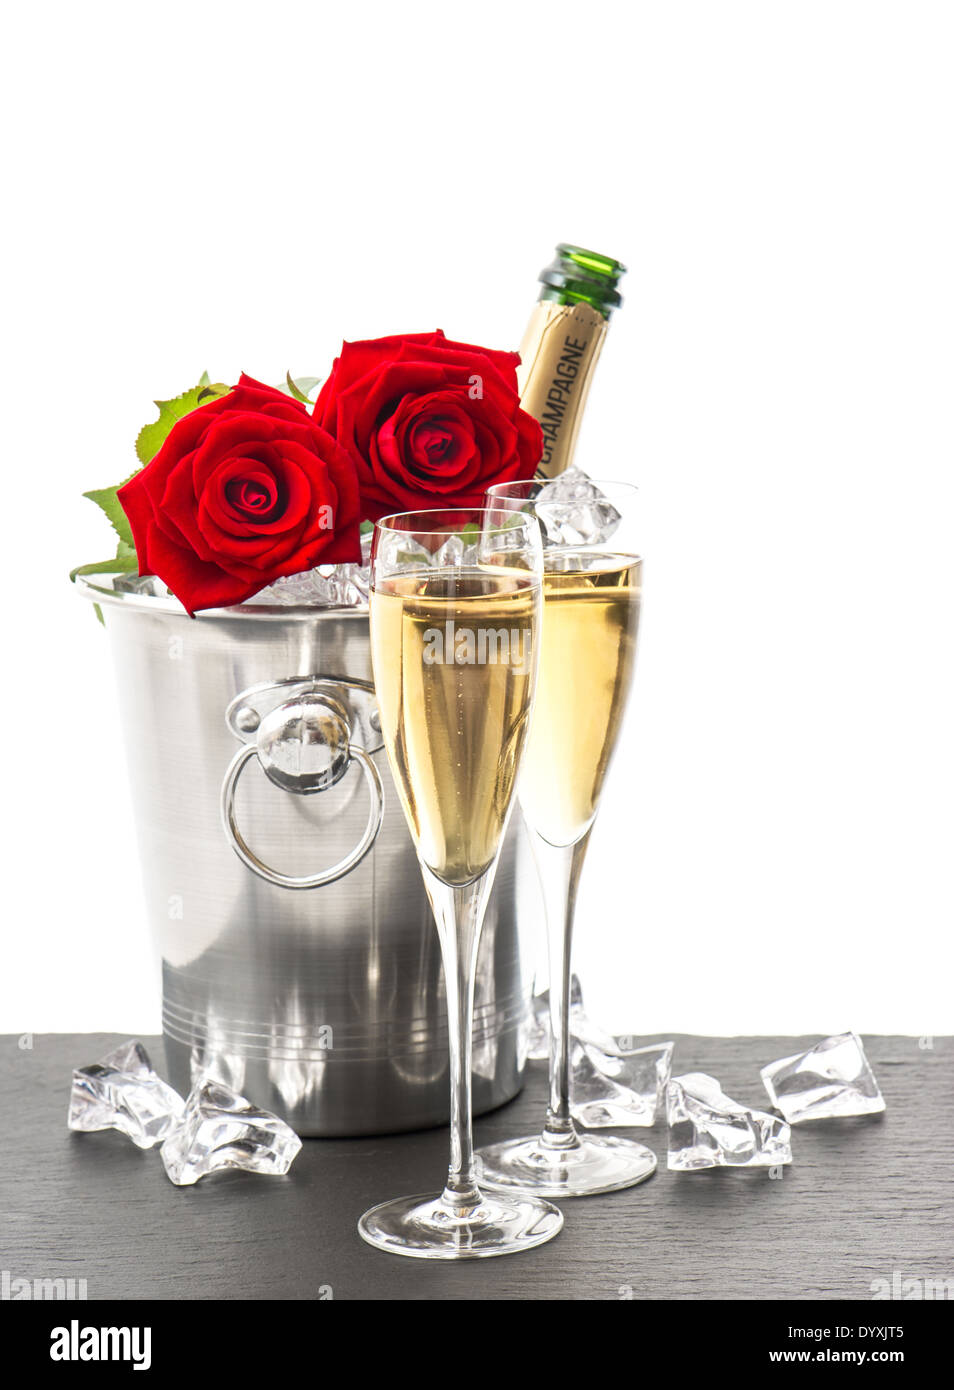 Bouteille De Champagne Deux Verres Et Roses Rouges Arrangement De Fete Avec Du Vin Mousseux Et Des Fleurs Photo Stock Alamy